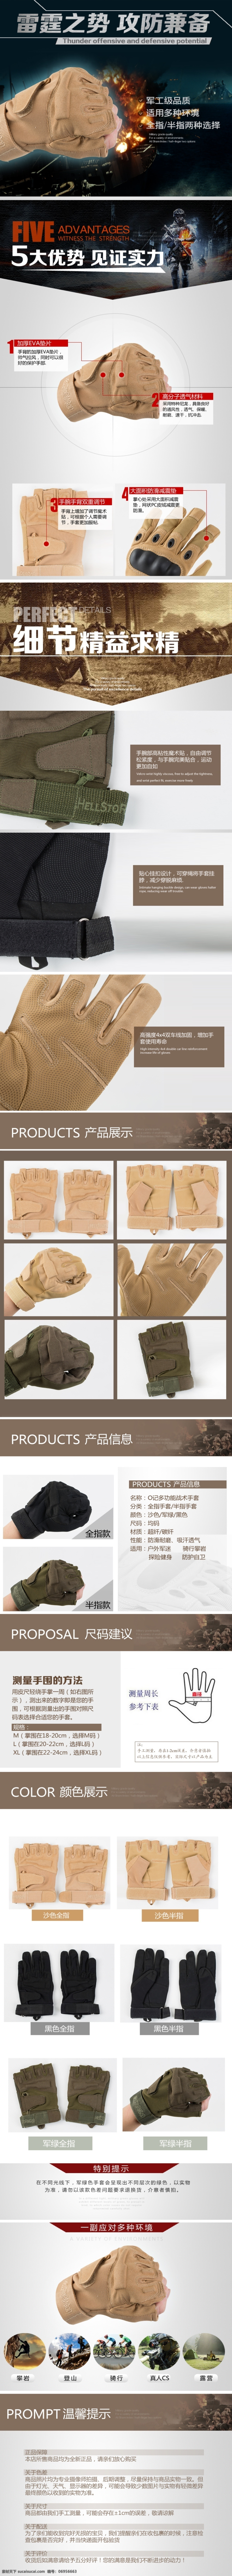 产品详情页 军用 手套 黑影手套 军用手套 手套产品描述 原创设计 原创淘宝设计